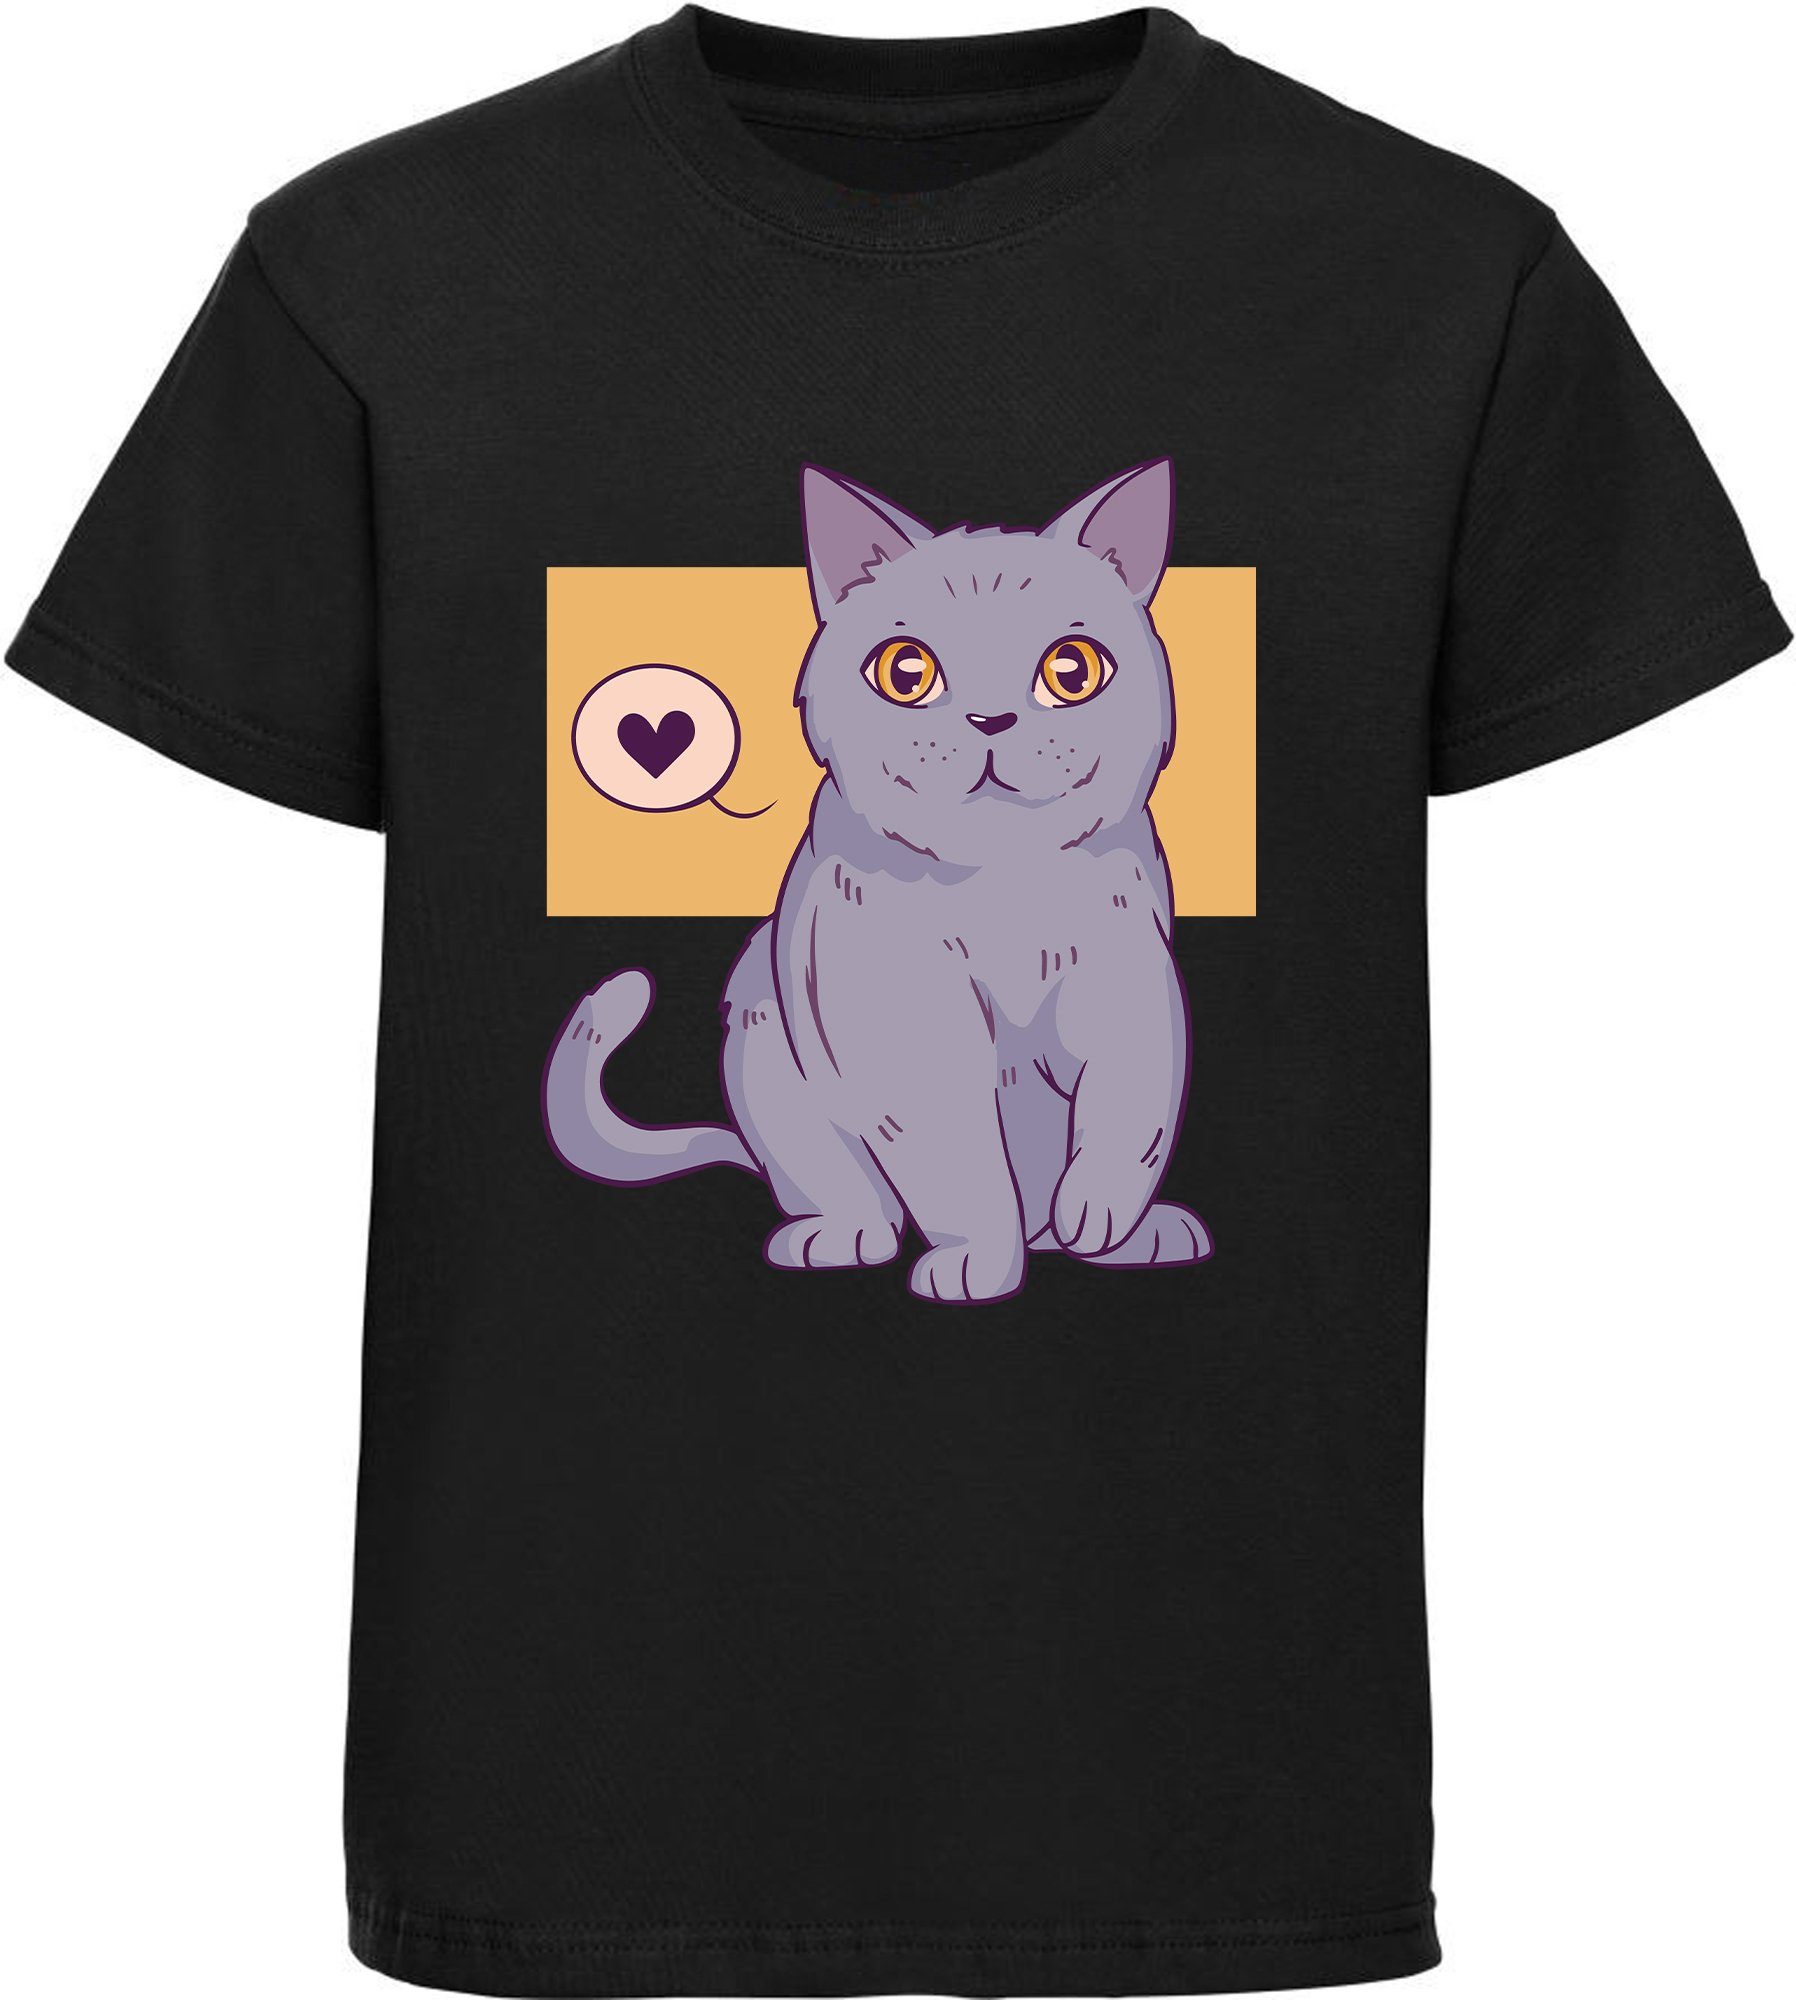 Print-Shirt Aufdruck, weiß, Katze T-Shirt mit schwarz, bedrucktes mit Baumwollshirt i129 Herz MyDesign24 Mädchen rot, rosa,